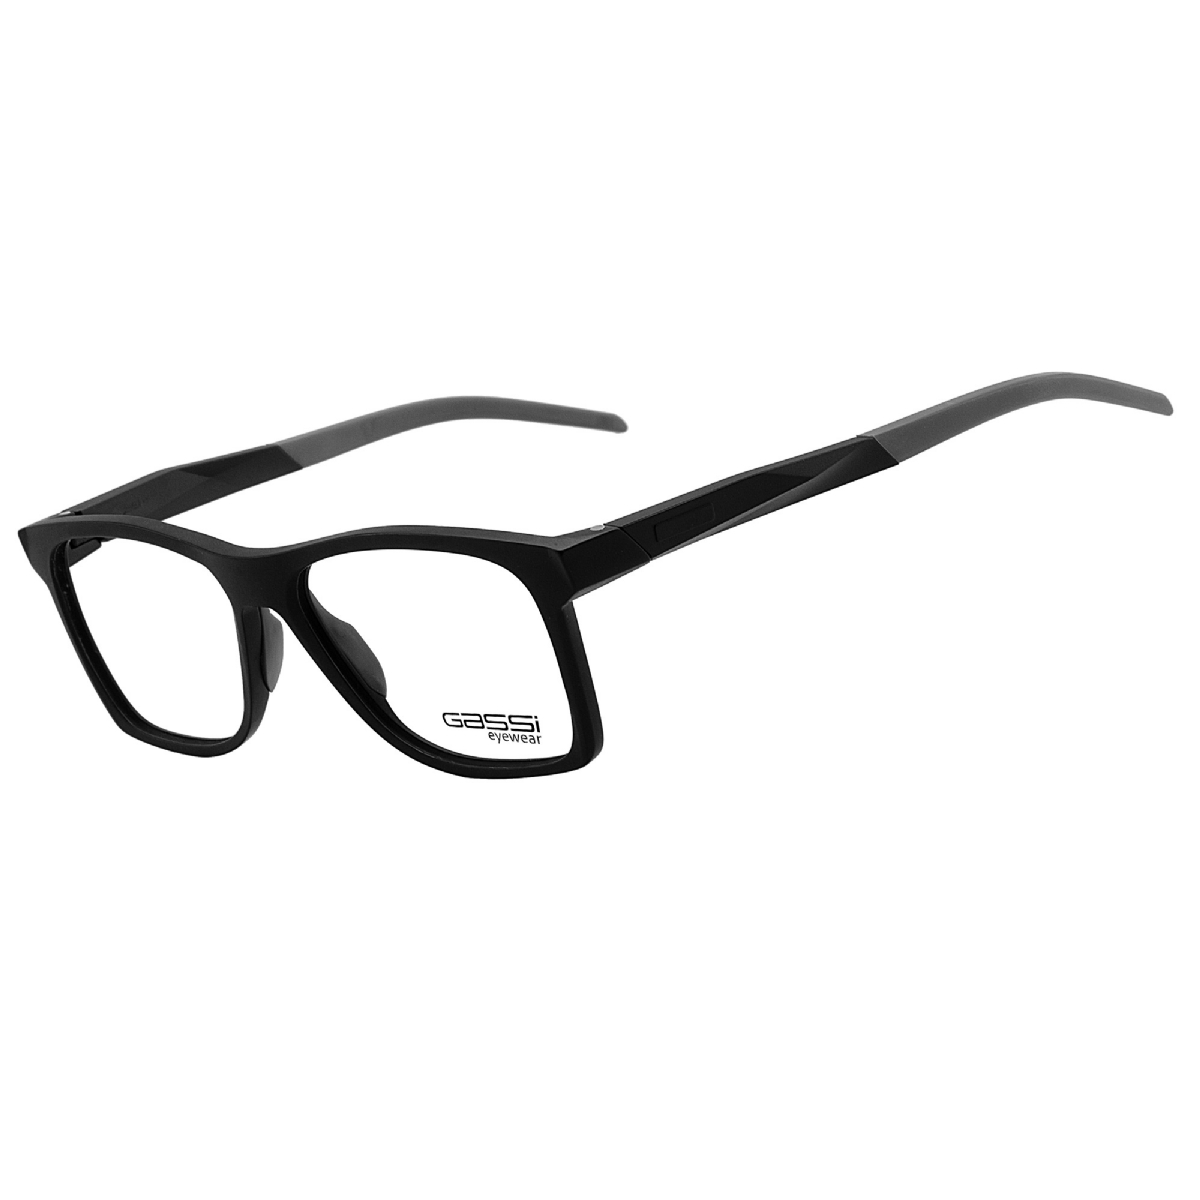 Óculos de grau Gassi Luke - Preto/Cinza